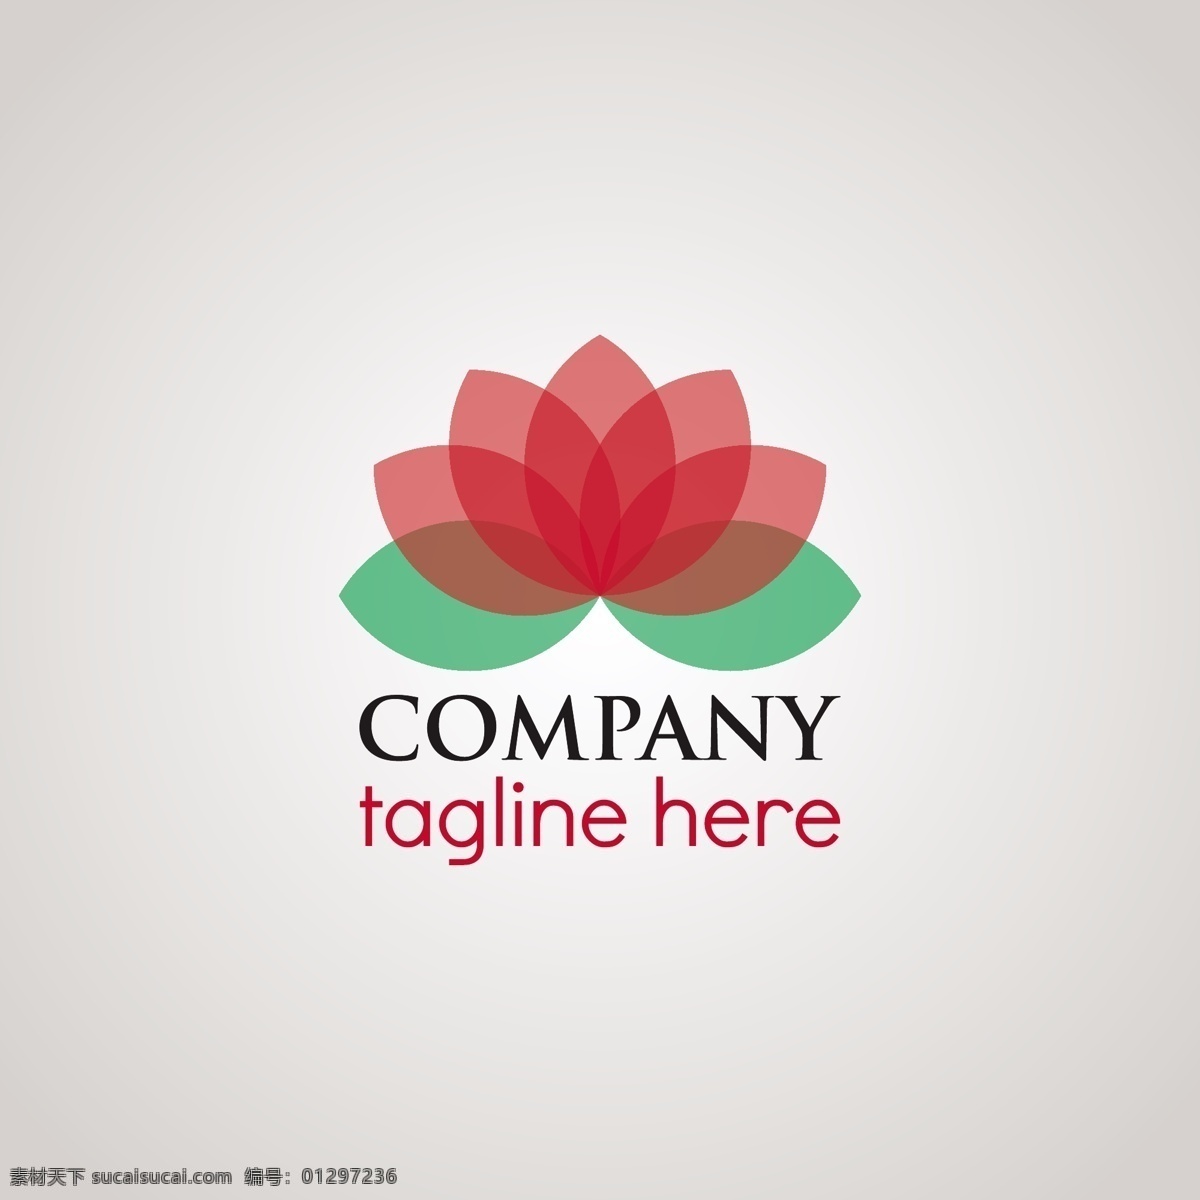 花形标志模板 标志 花 商务 抽象 花卉 模板 营销 色彩 企业 公司 品牌 抽象图案 形状 现代企业形象 身份 标识 颜色